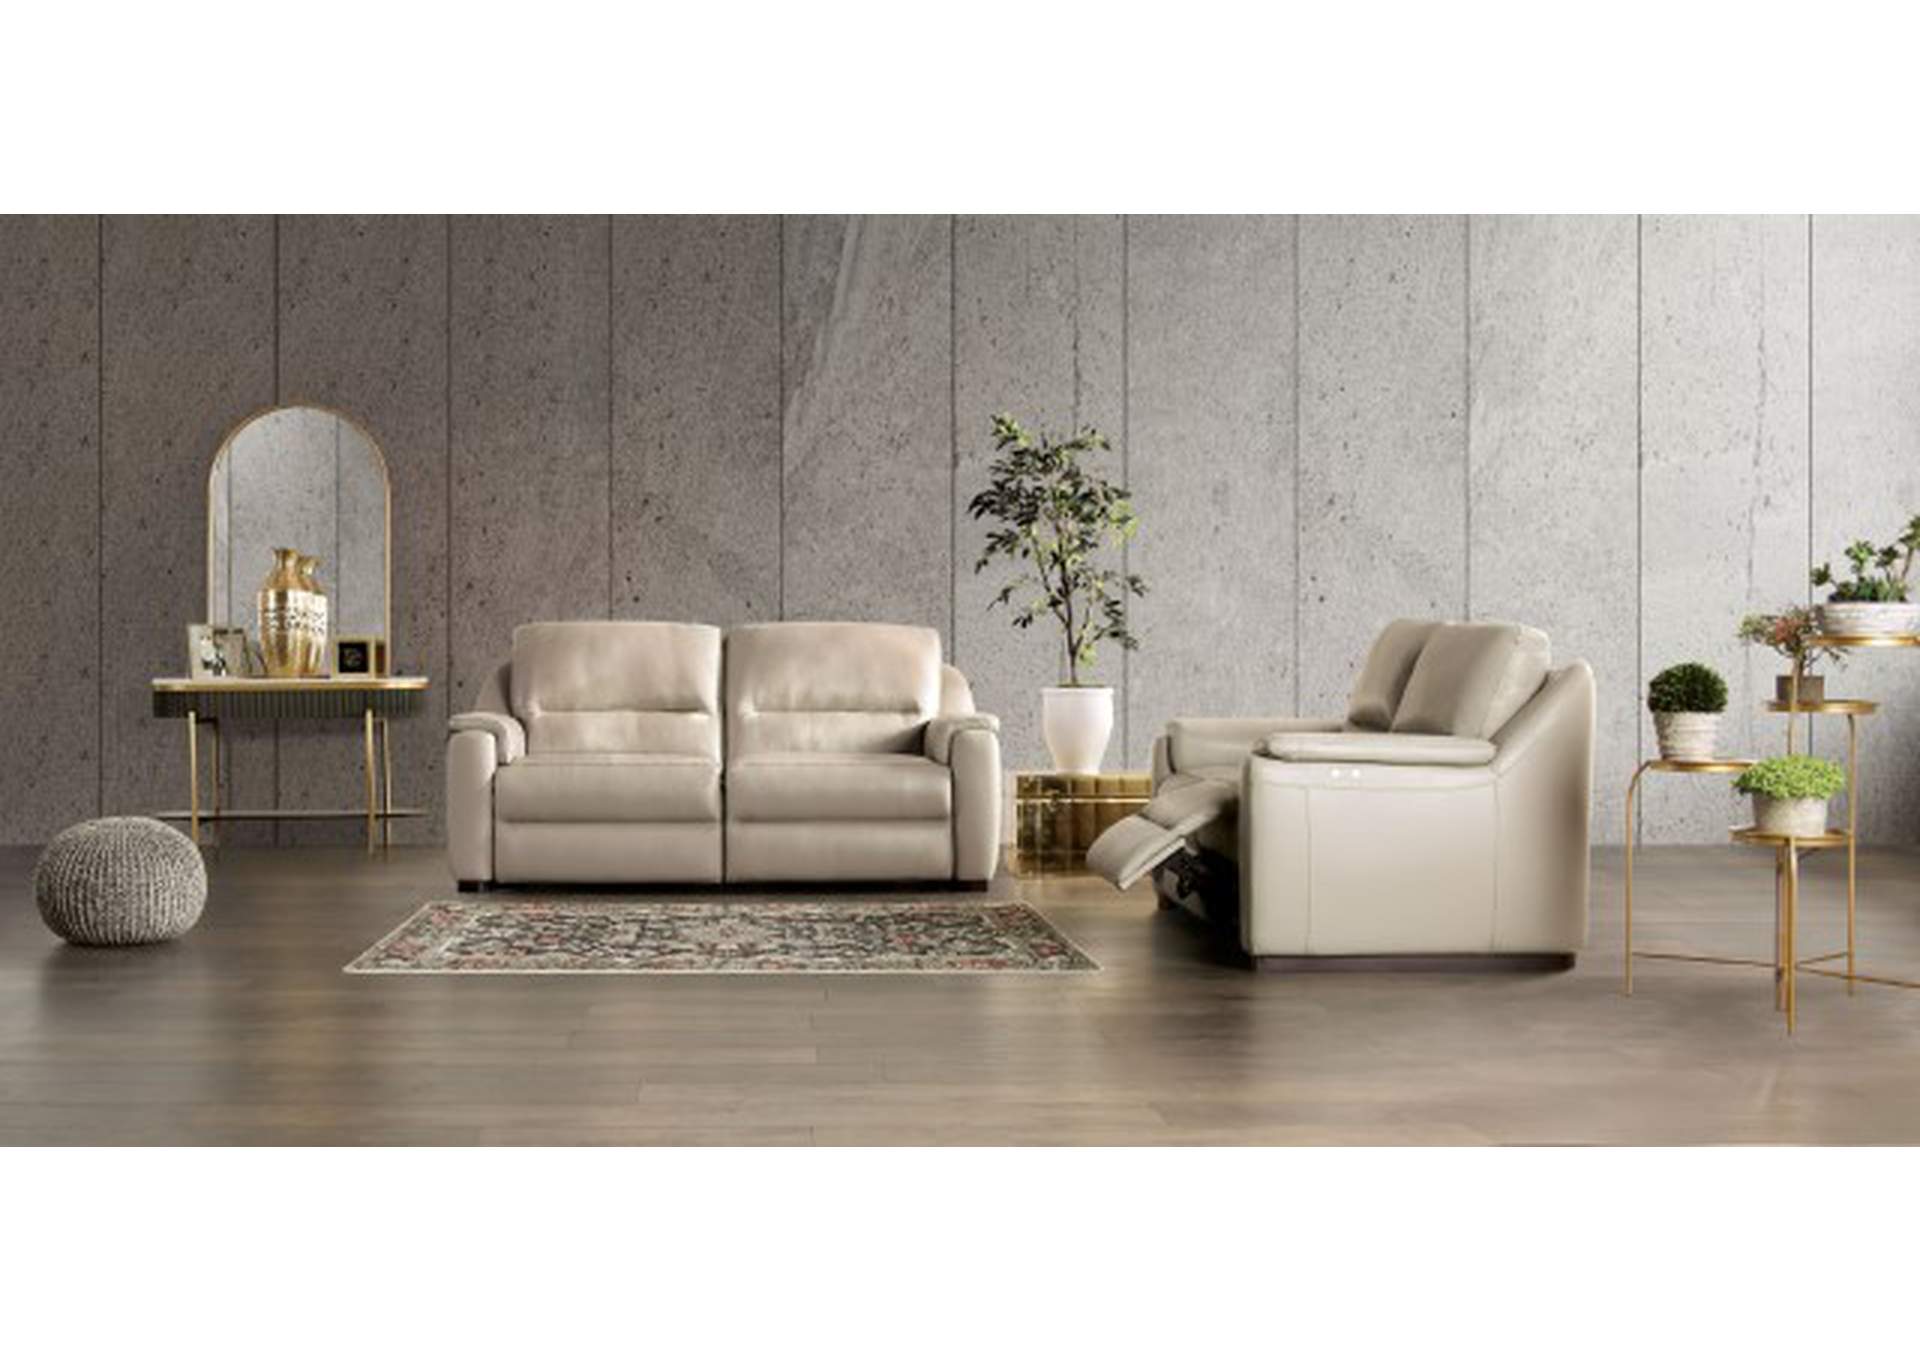 Altamura Power Sofa,Furniture of America